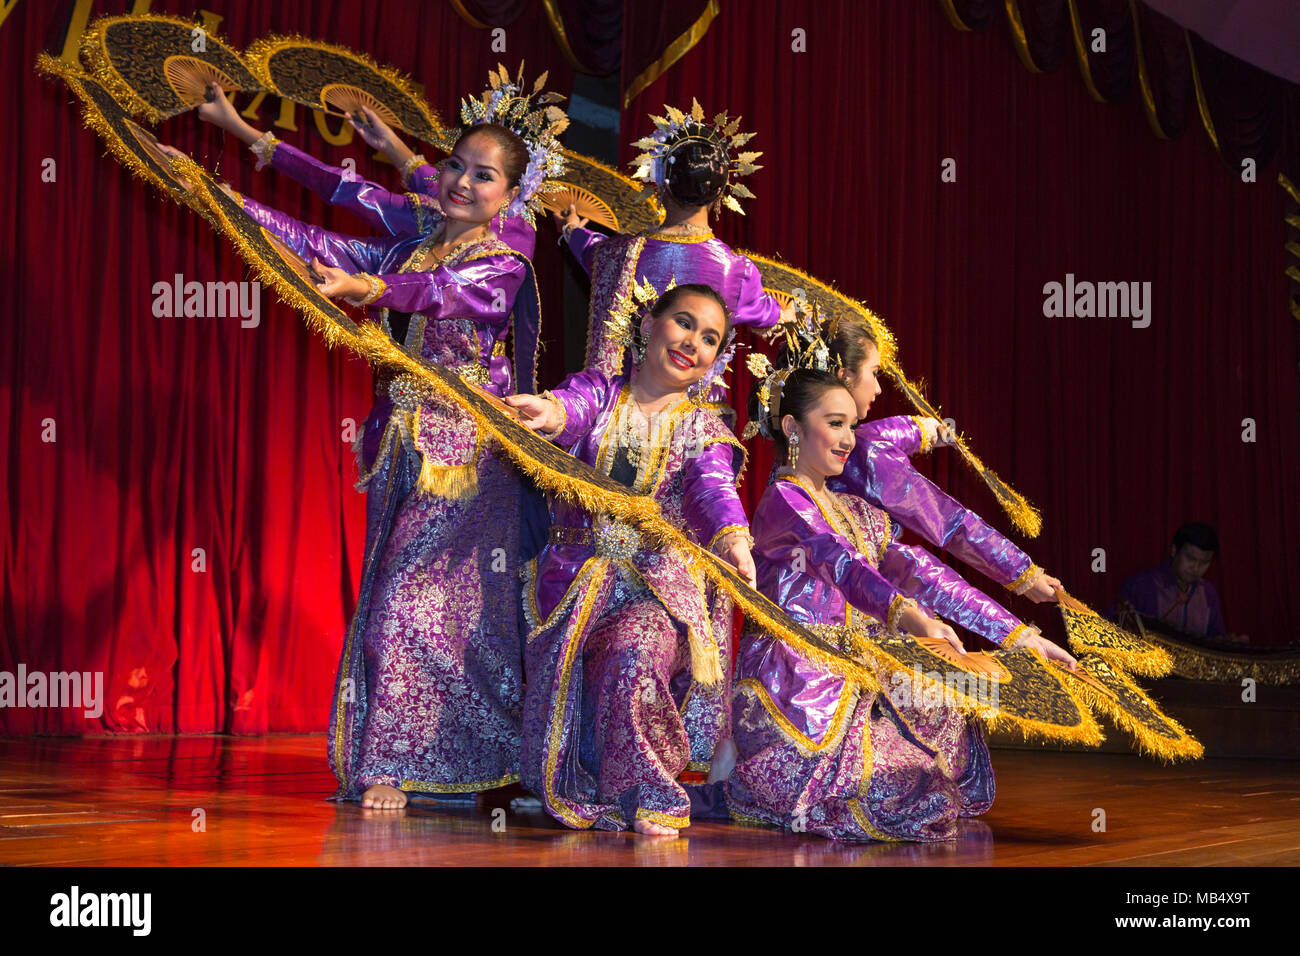 Danseurs au spectacle culturel thaïlandais, Bangkok, Thaïlande Banque D'Images